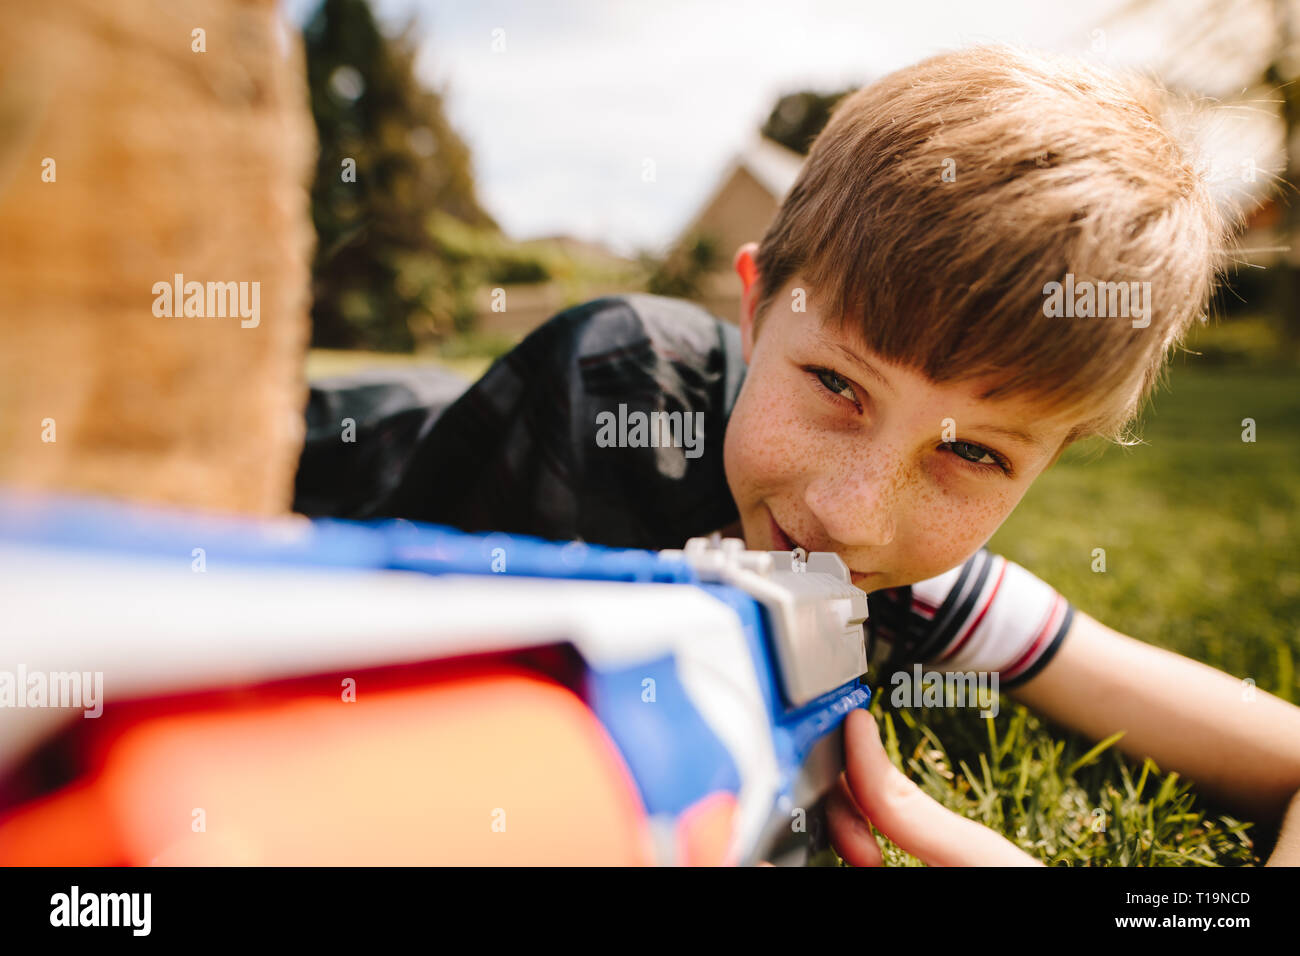 Kid in Kap versteckt sich hinter einem hölzernen mit spielzeugpistole in der Hand anmelden. Cute Boy spielen mit Spielzeug gewehr im Spielplatz. Stockfoto